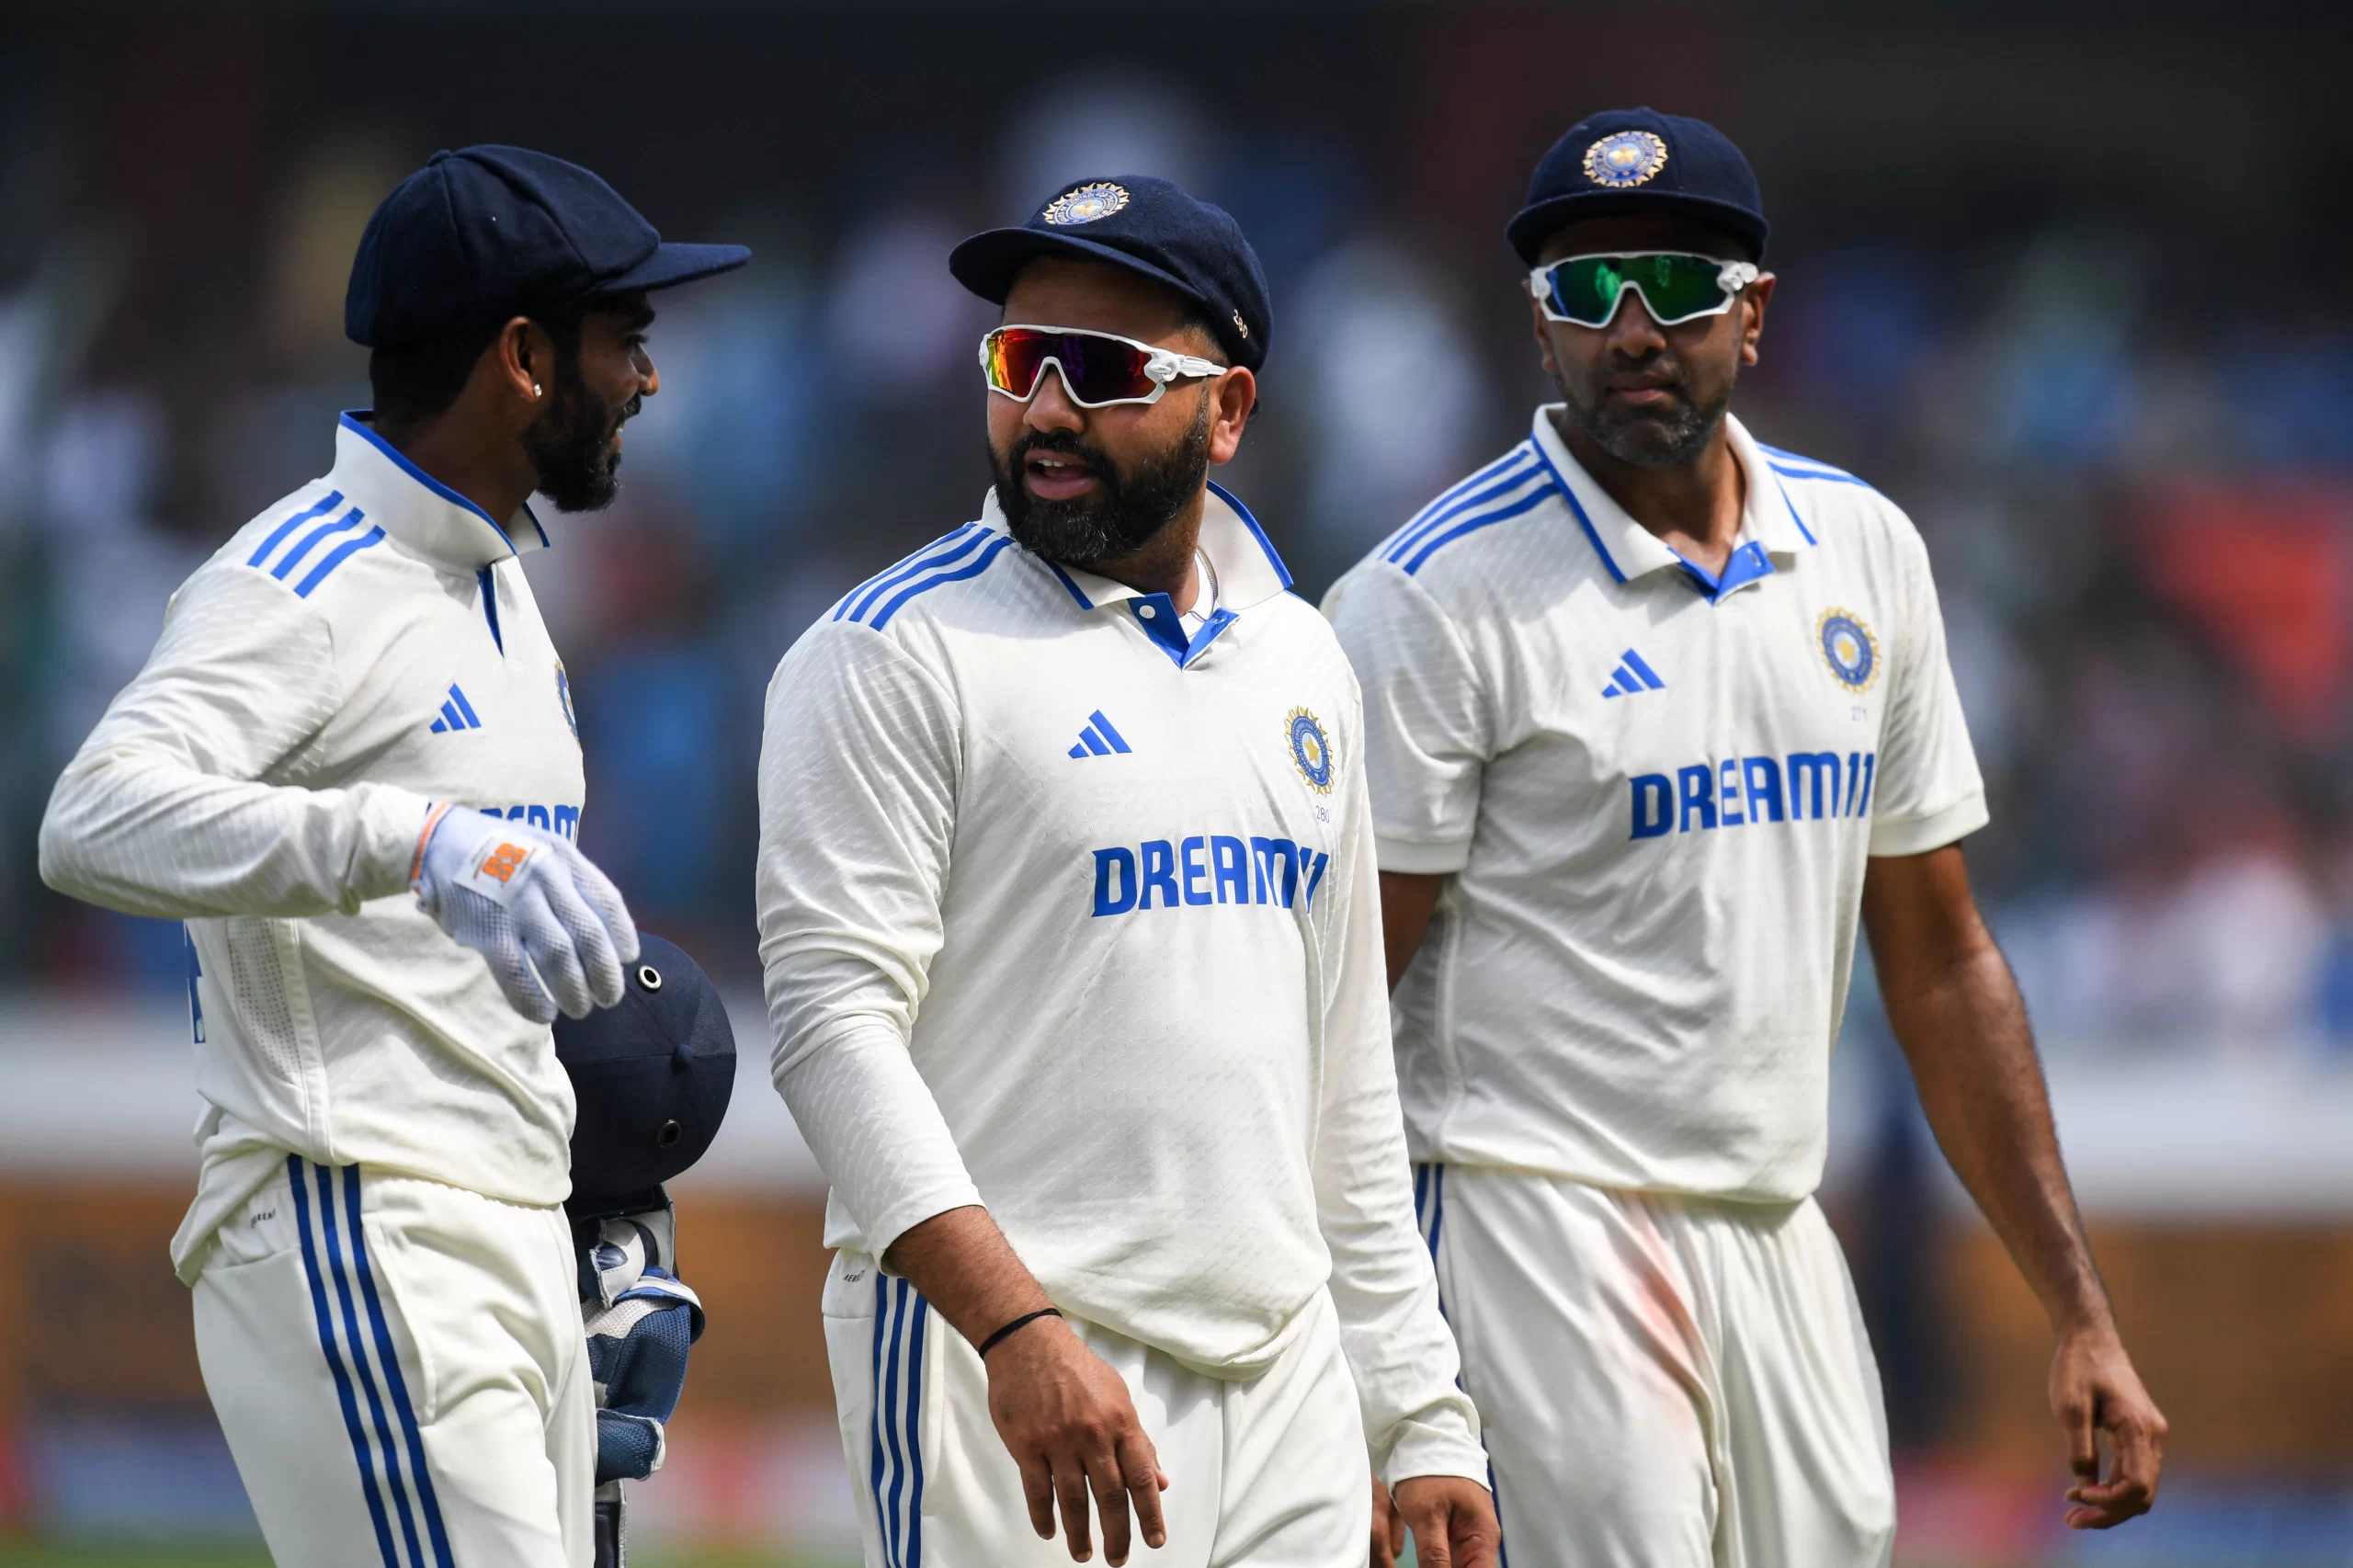 “टीम इंडिया के खिलाड़ियों का…”, रवि शास्त्री ने रोहित एंड कंपनी को लगाई फटकार, ऐसा कहकर बताई हार की बड़ी वजह